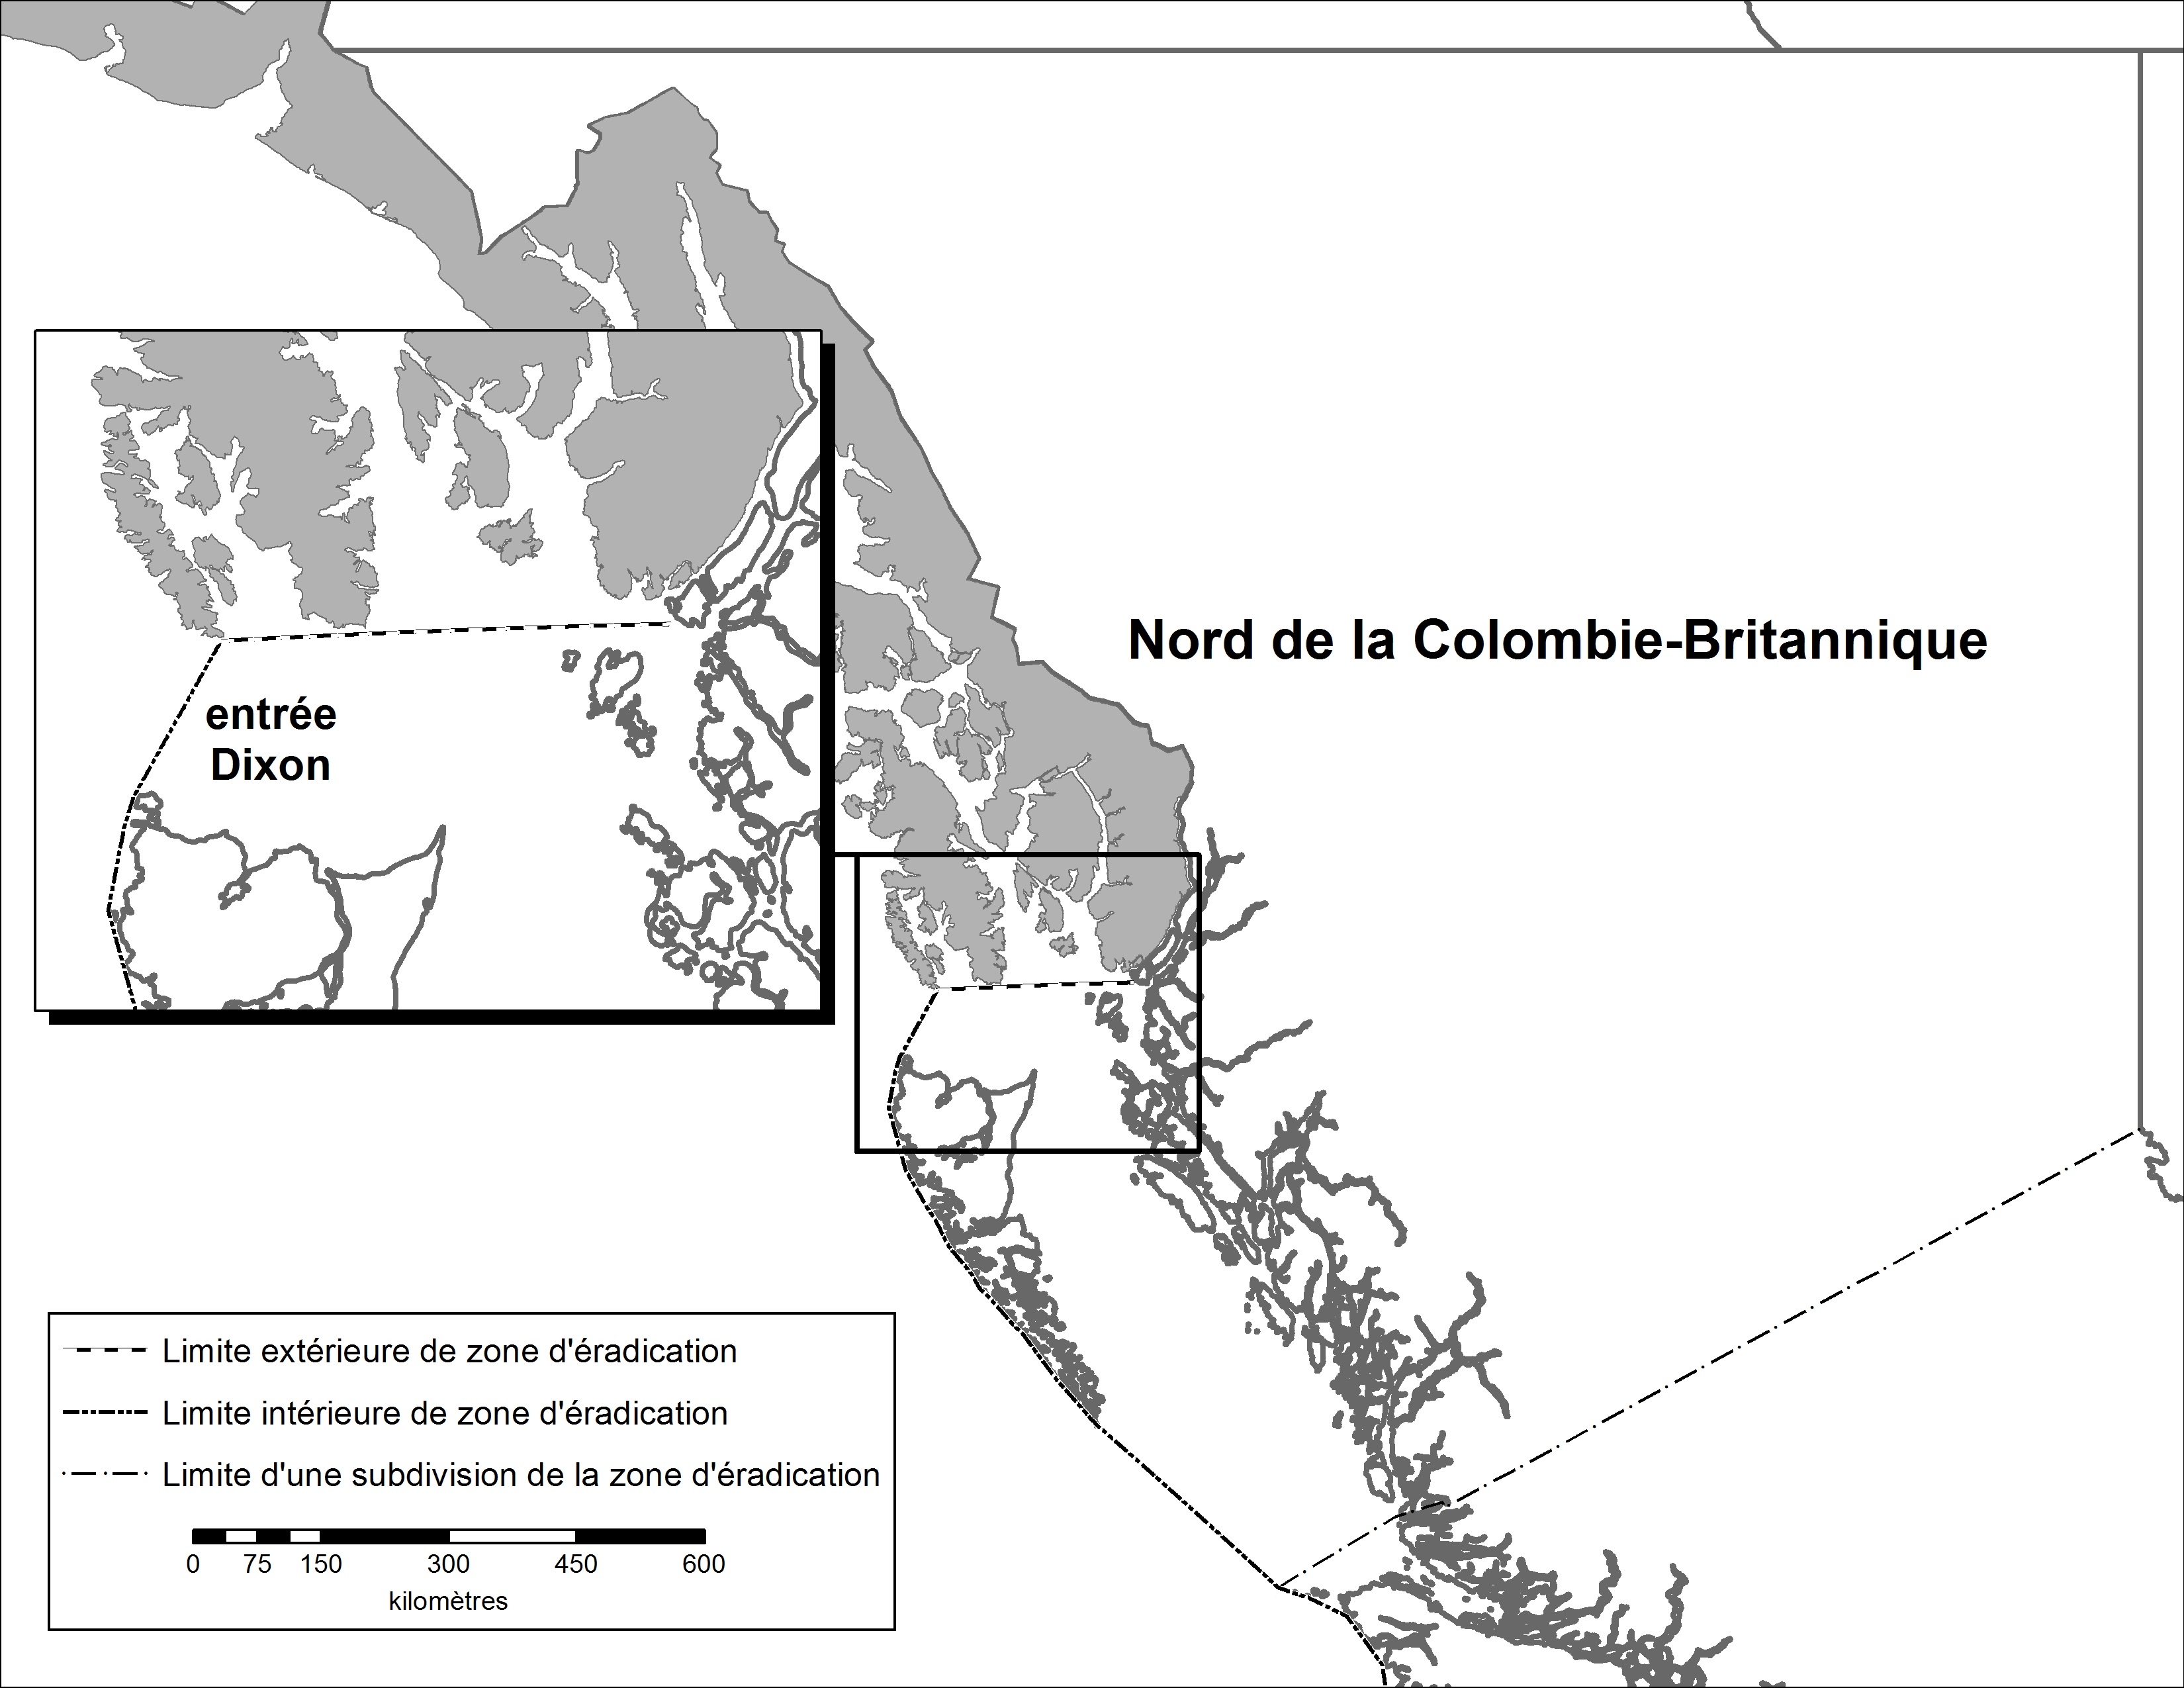 Nord de la Colombie-Britannique – Carte de la région déclarée. Description ci-dessous.